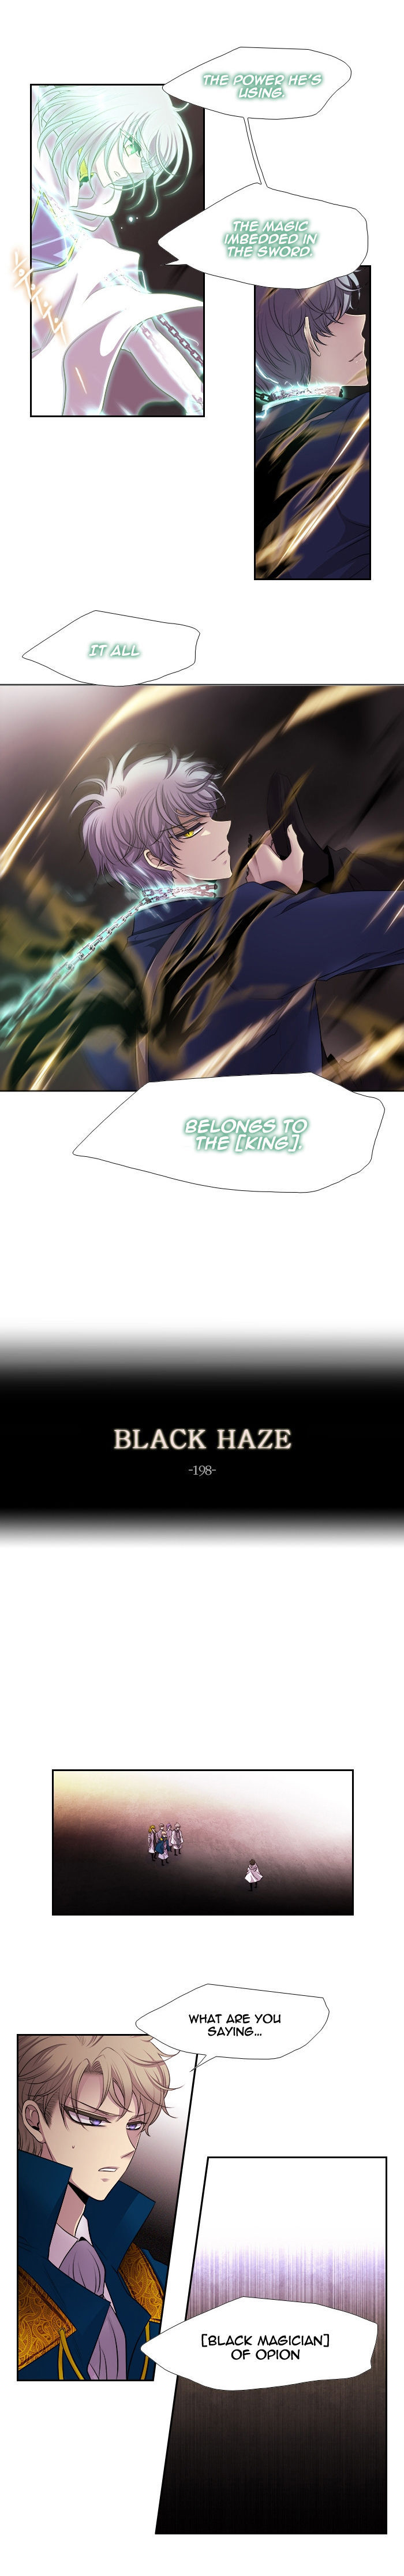 Black Haze 198